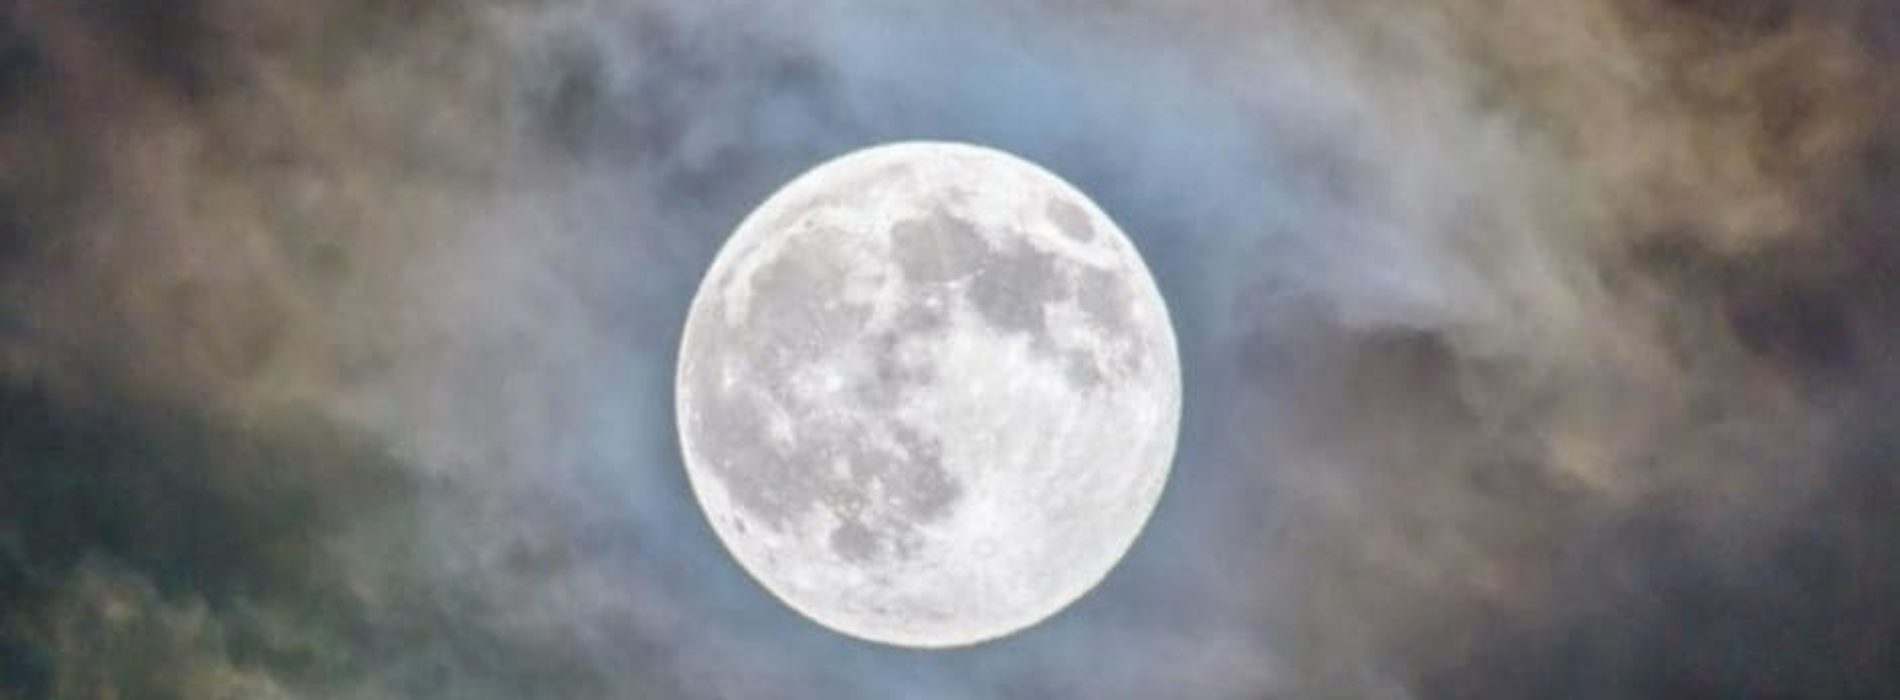 La ‘Luna de Nieve’ se podrá ver en su esplendor desde hoy, 16 de febrero, a simple vista, en México.